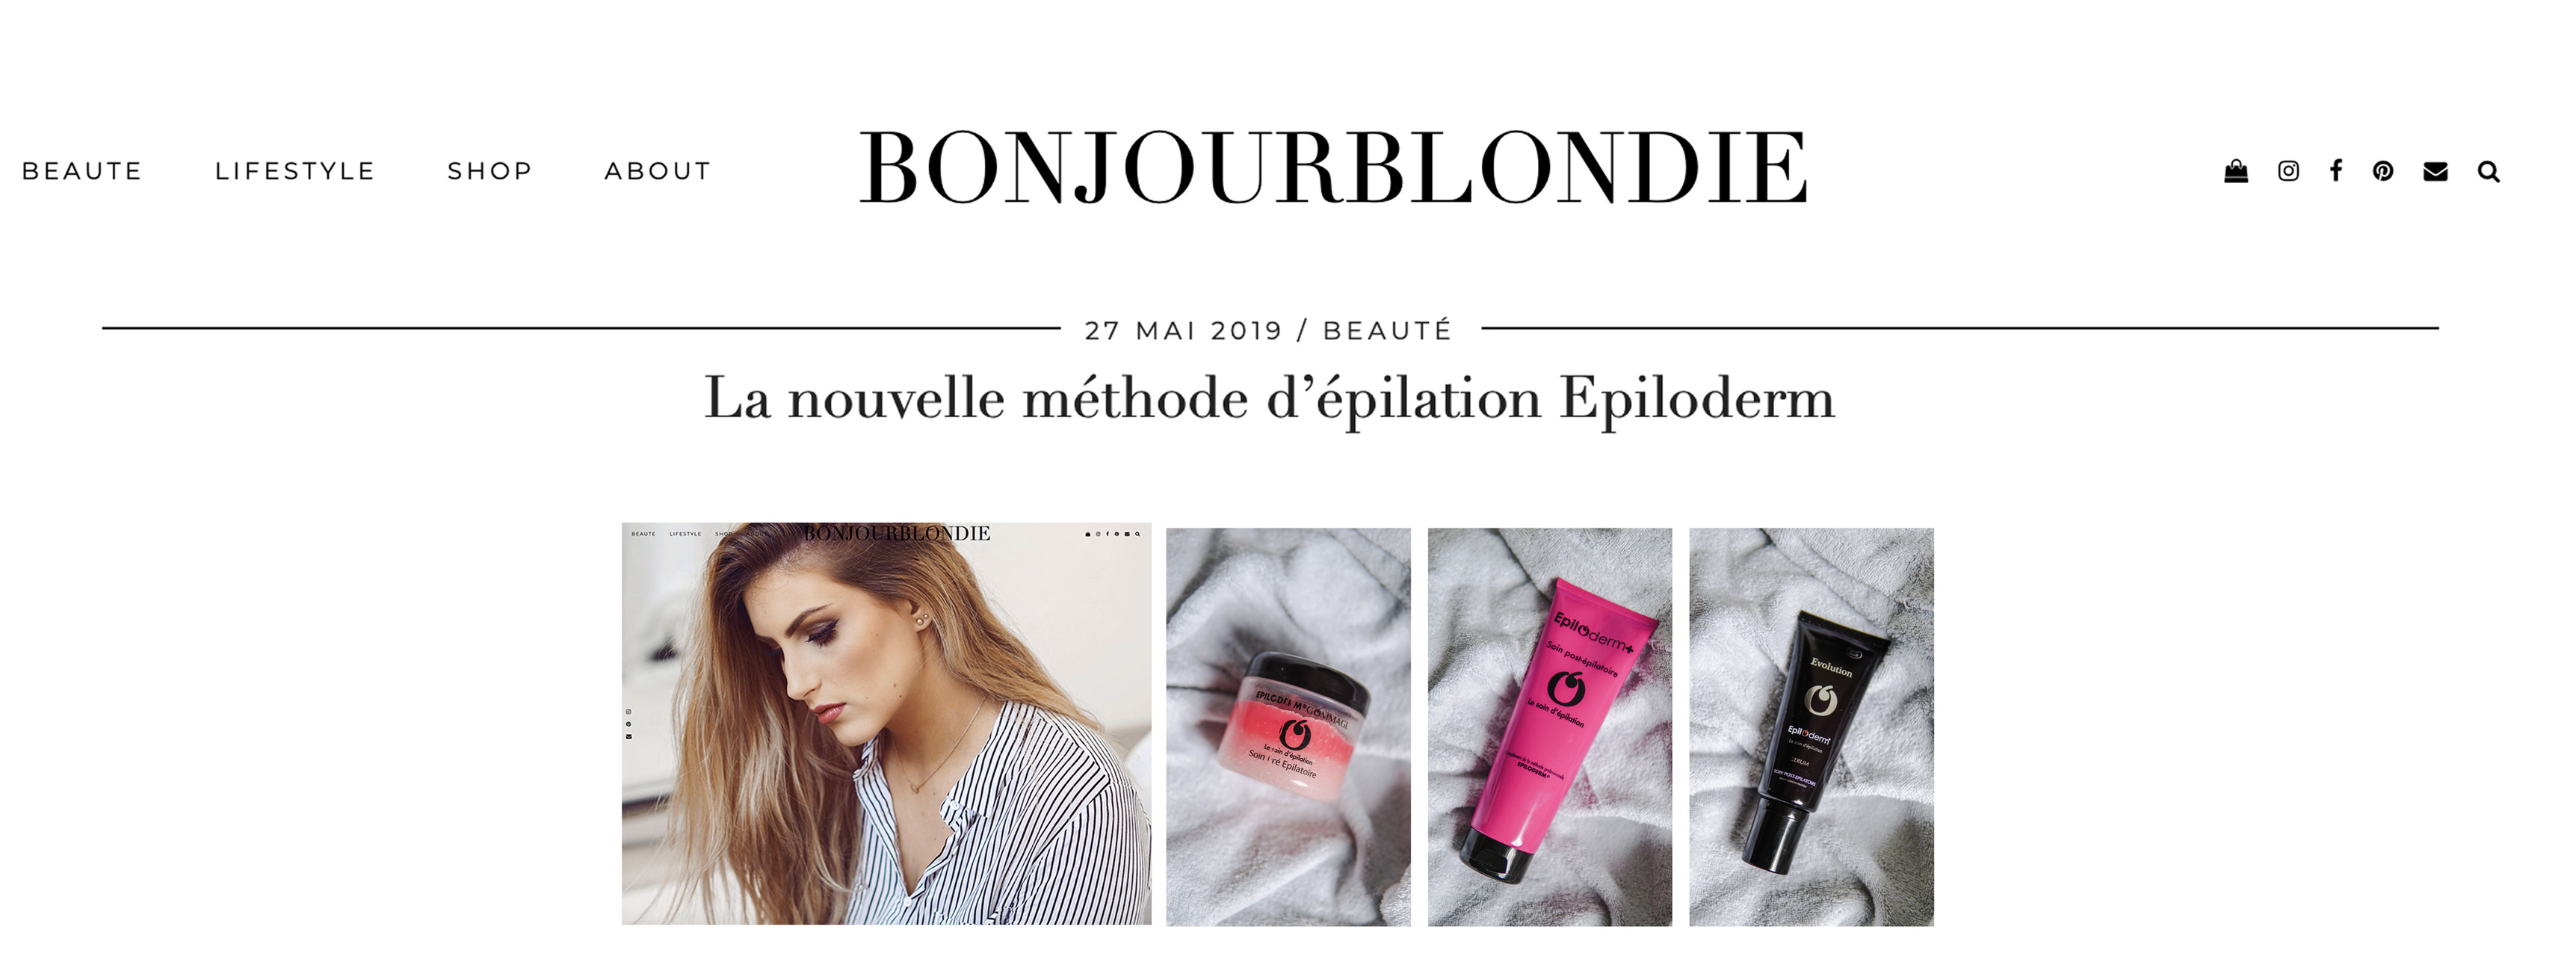 BONJOUR-BLONDIE_méthode_nouvelle_épilation